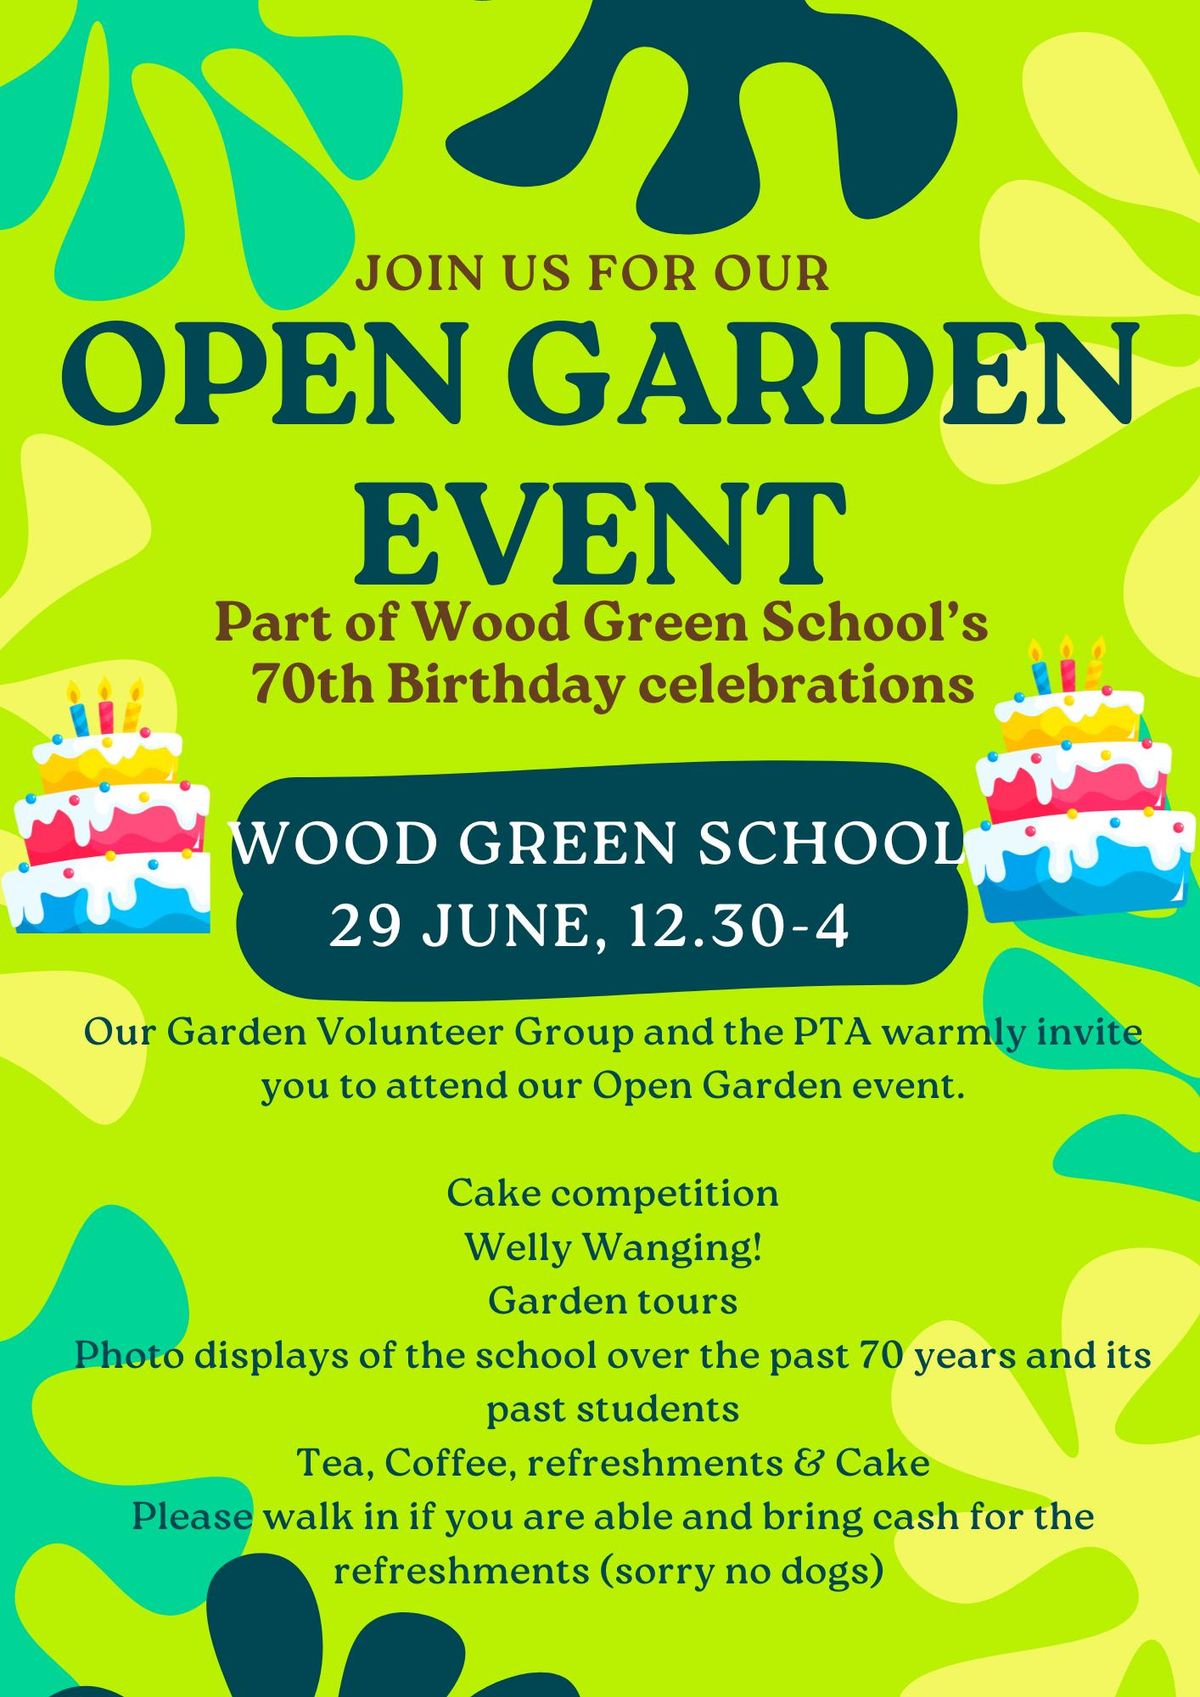 Wood Green School Open Gardens & Plant Sale